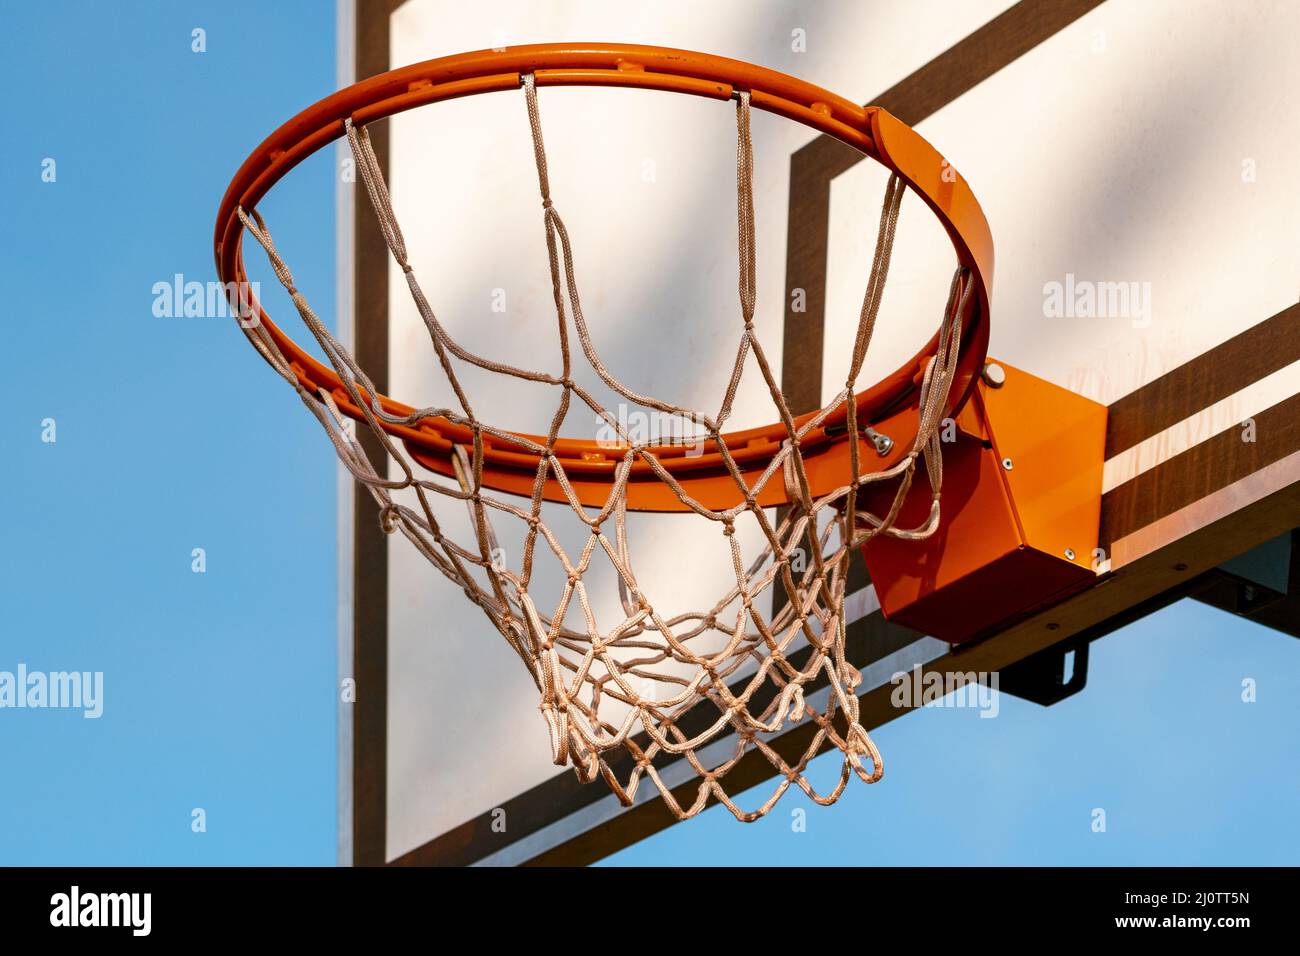 Basketballkorb aus nächster Nähe auf blauem Himmel Hintergrund  Stockfotografie - Alamy